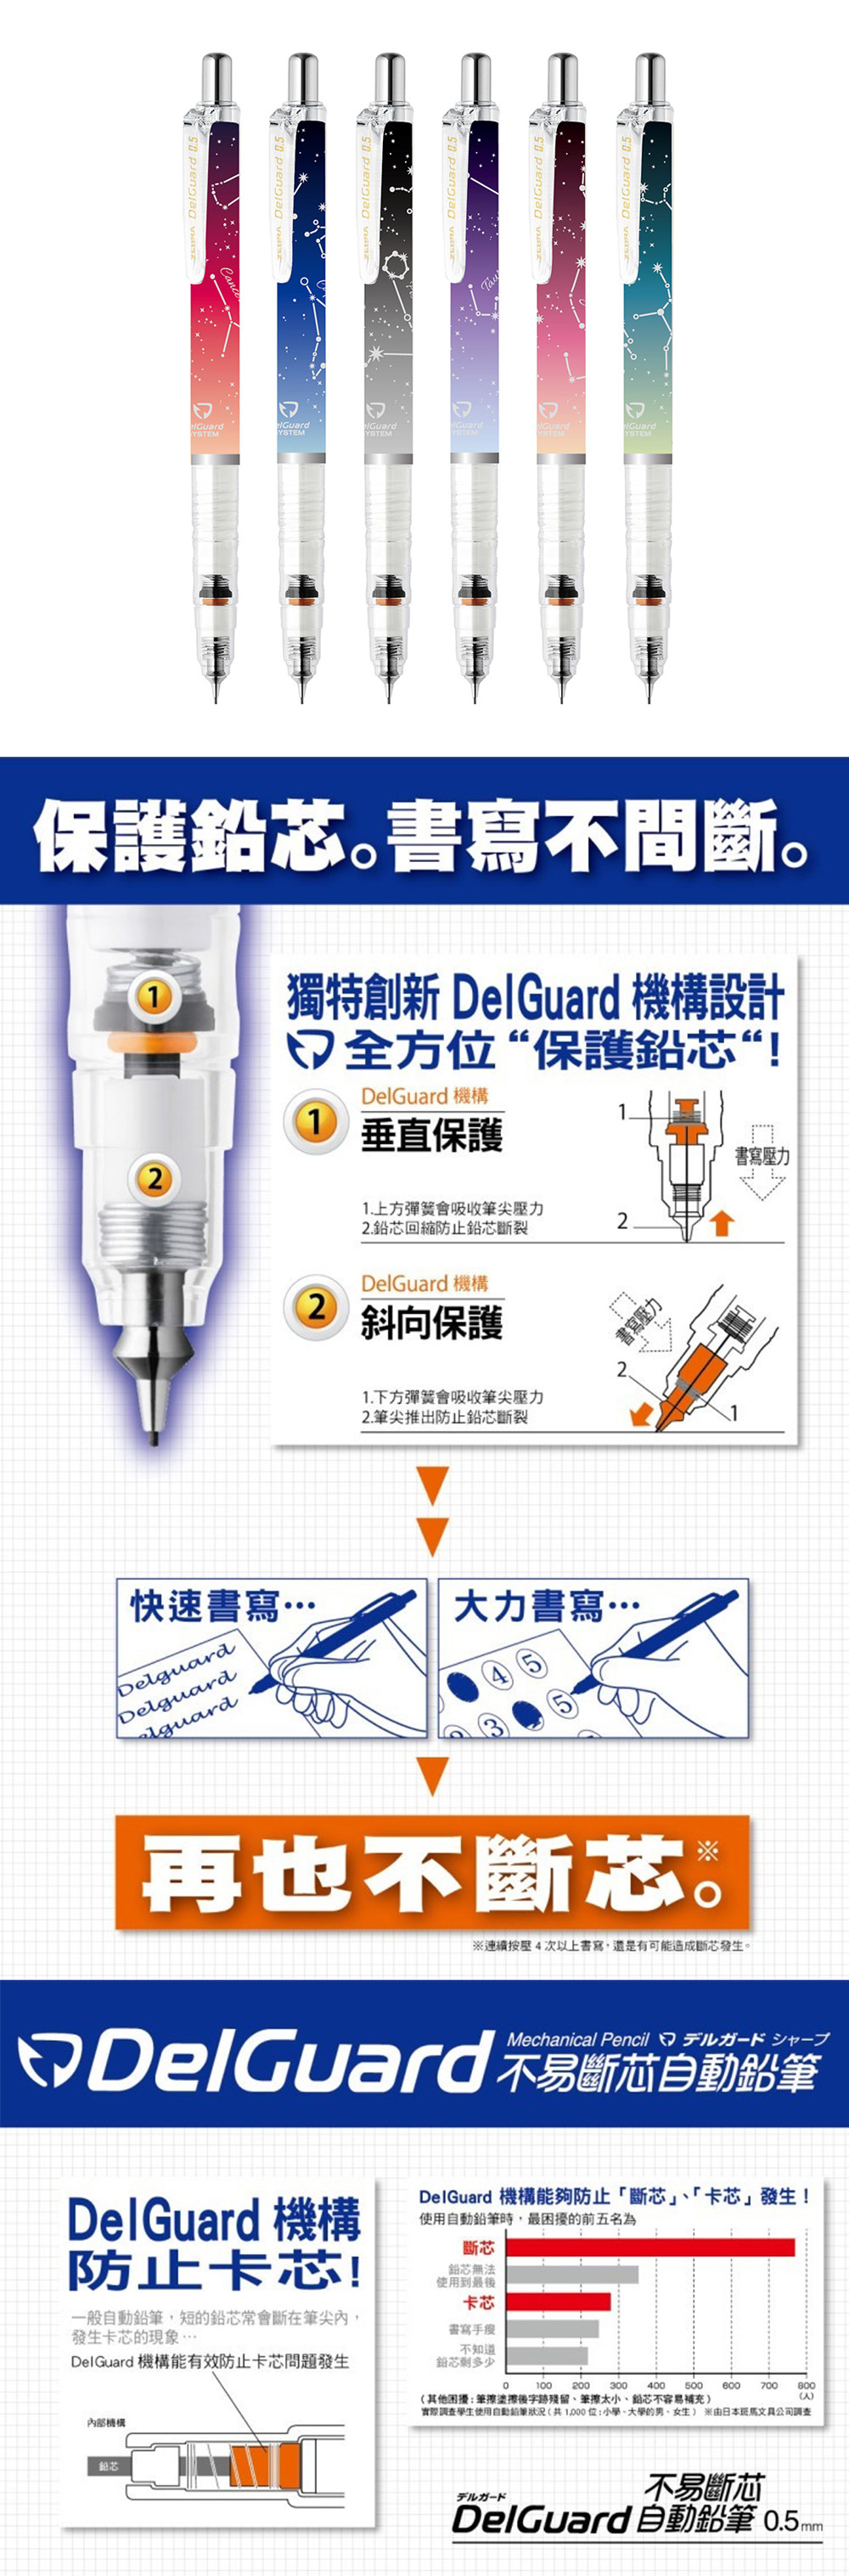 0.5 自動鉛筆 delguard 自動鉛筆 delguard 0.5